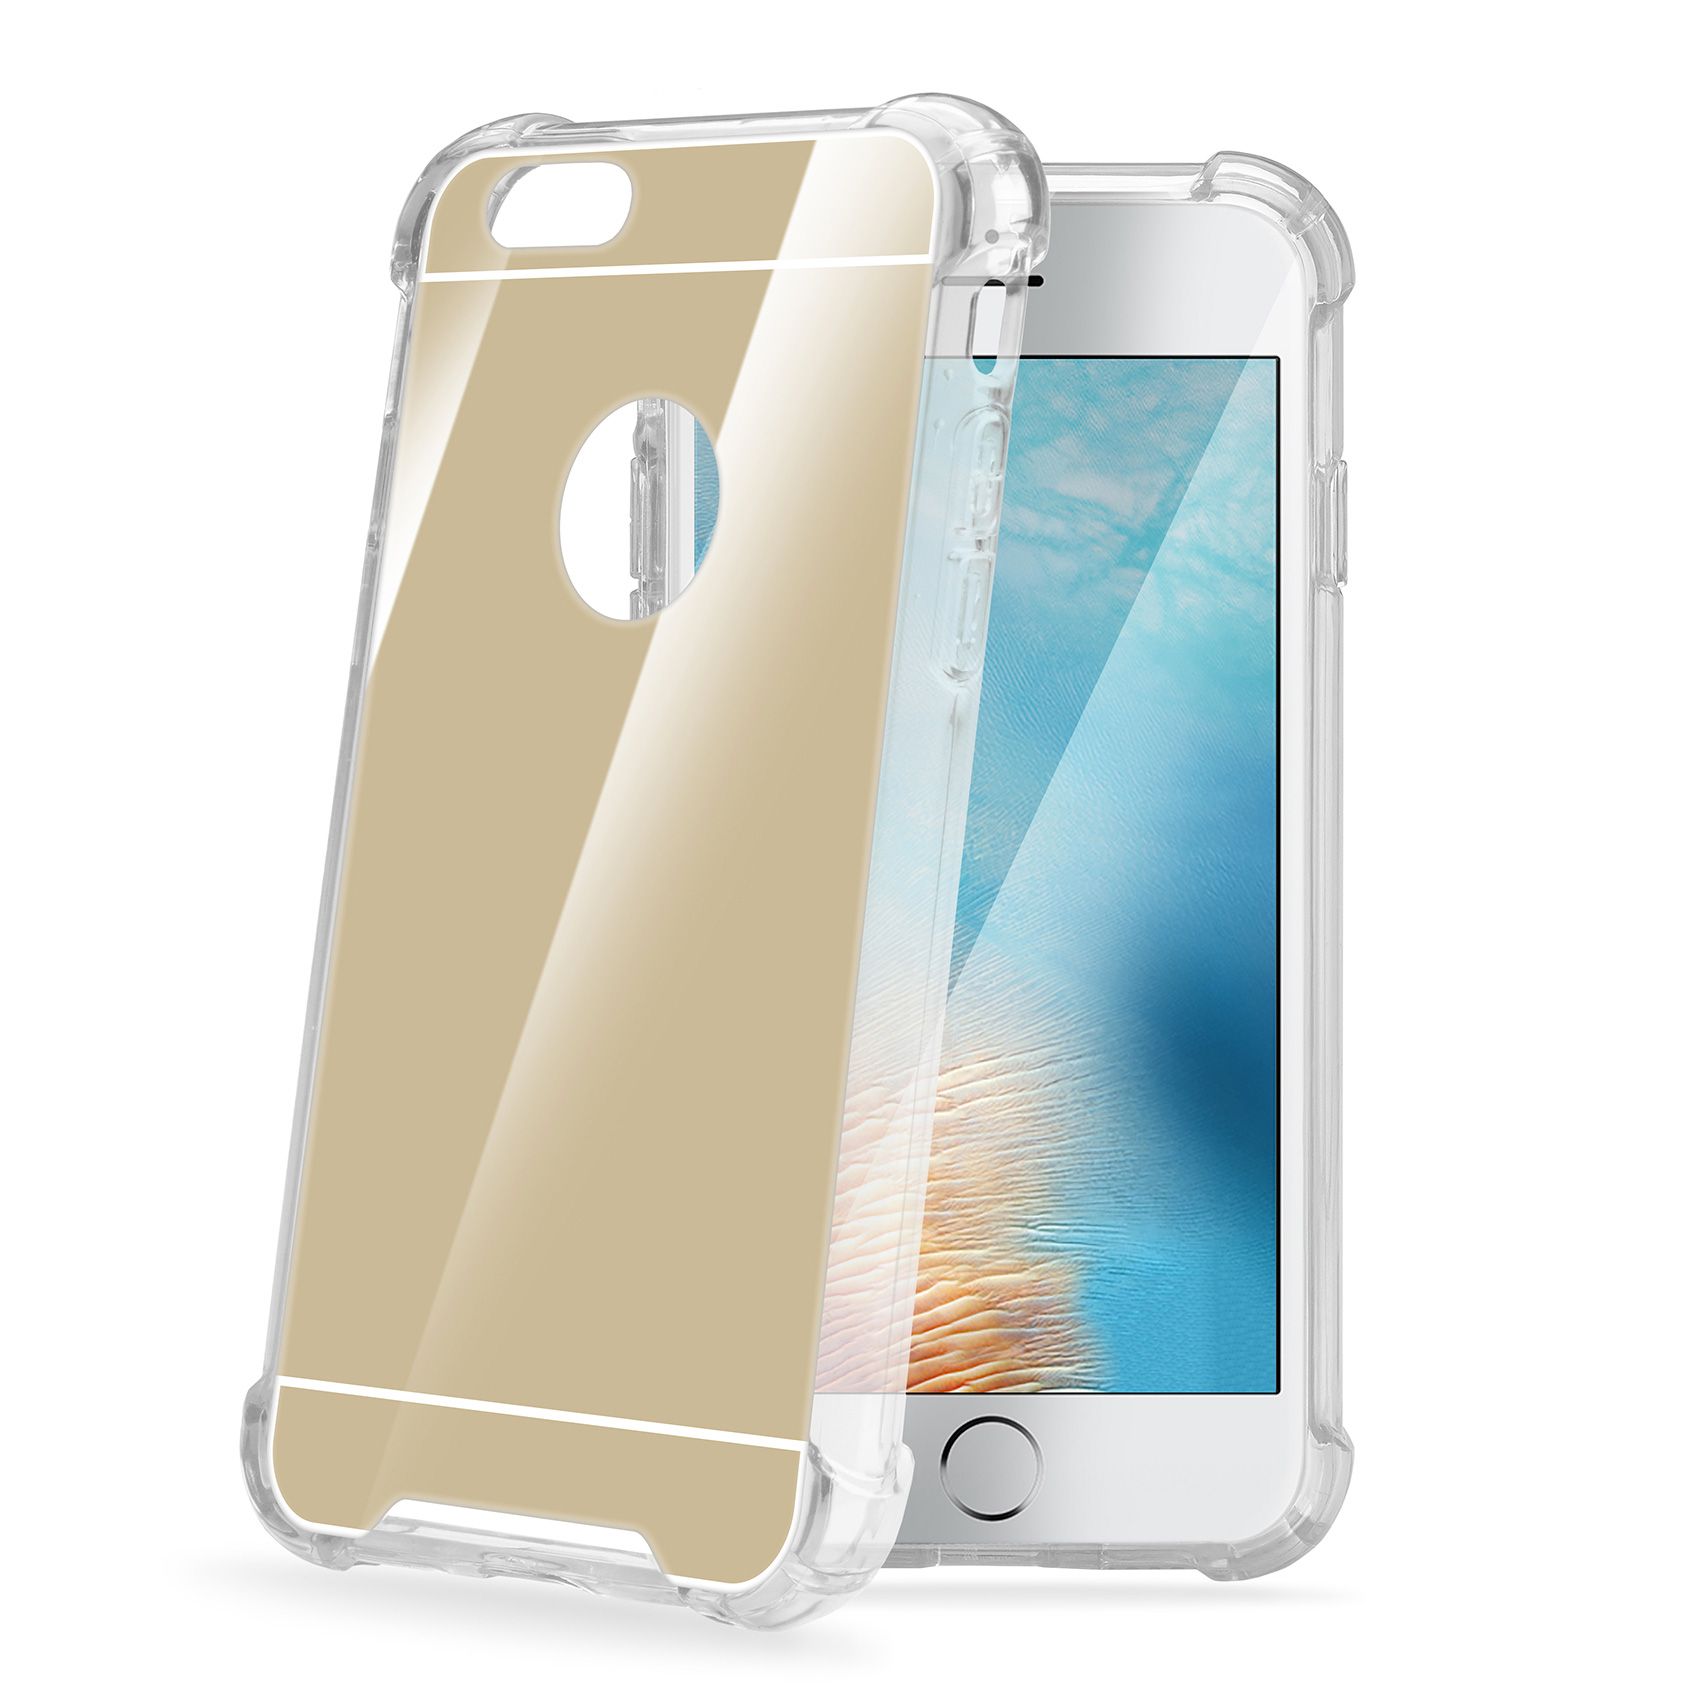 Zadní kryt CELLY Armor pro Apple iPhone 7 Plus/8 Plus, se zrcadlovým efektem, zlaté